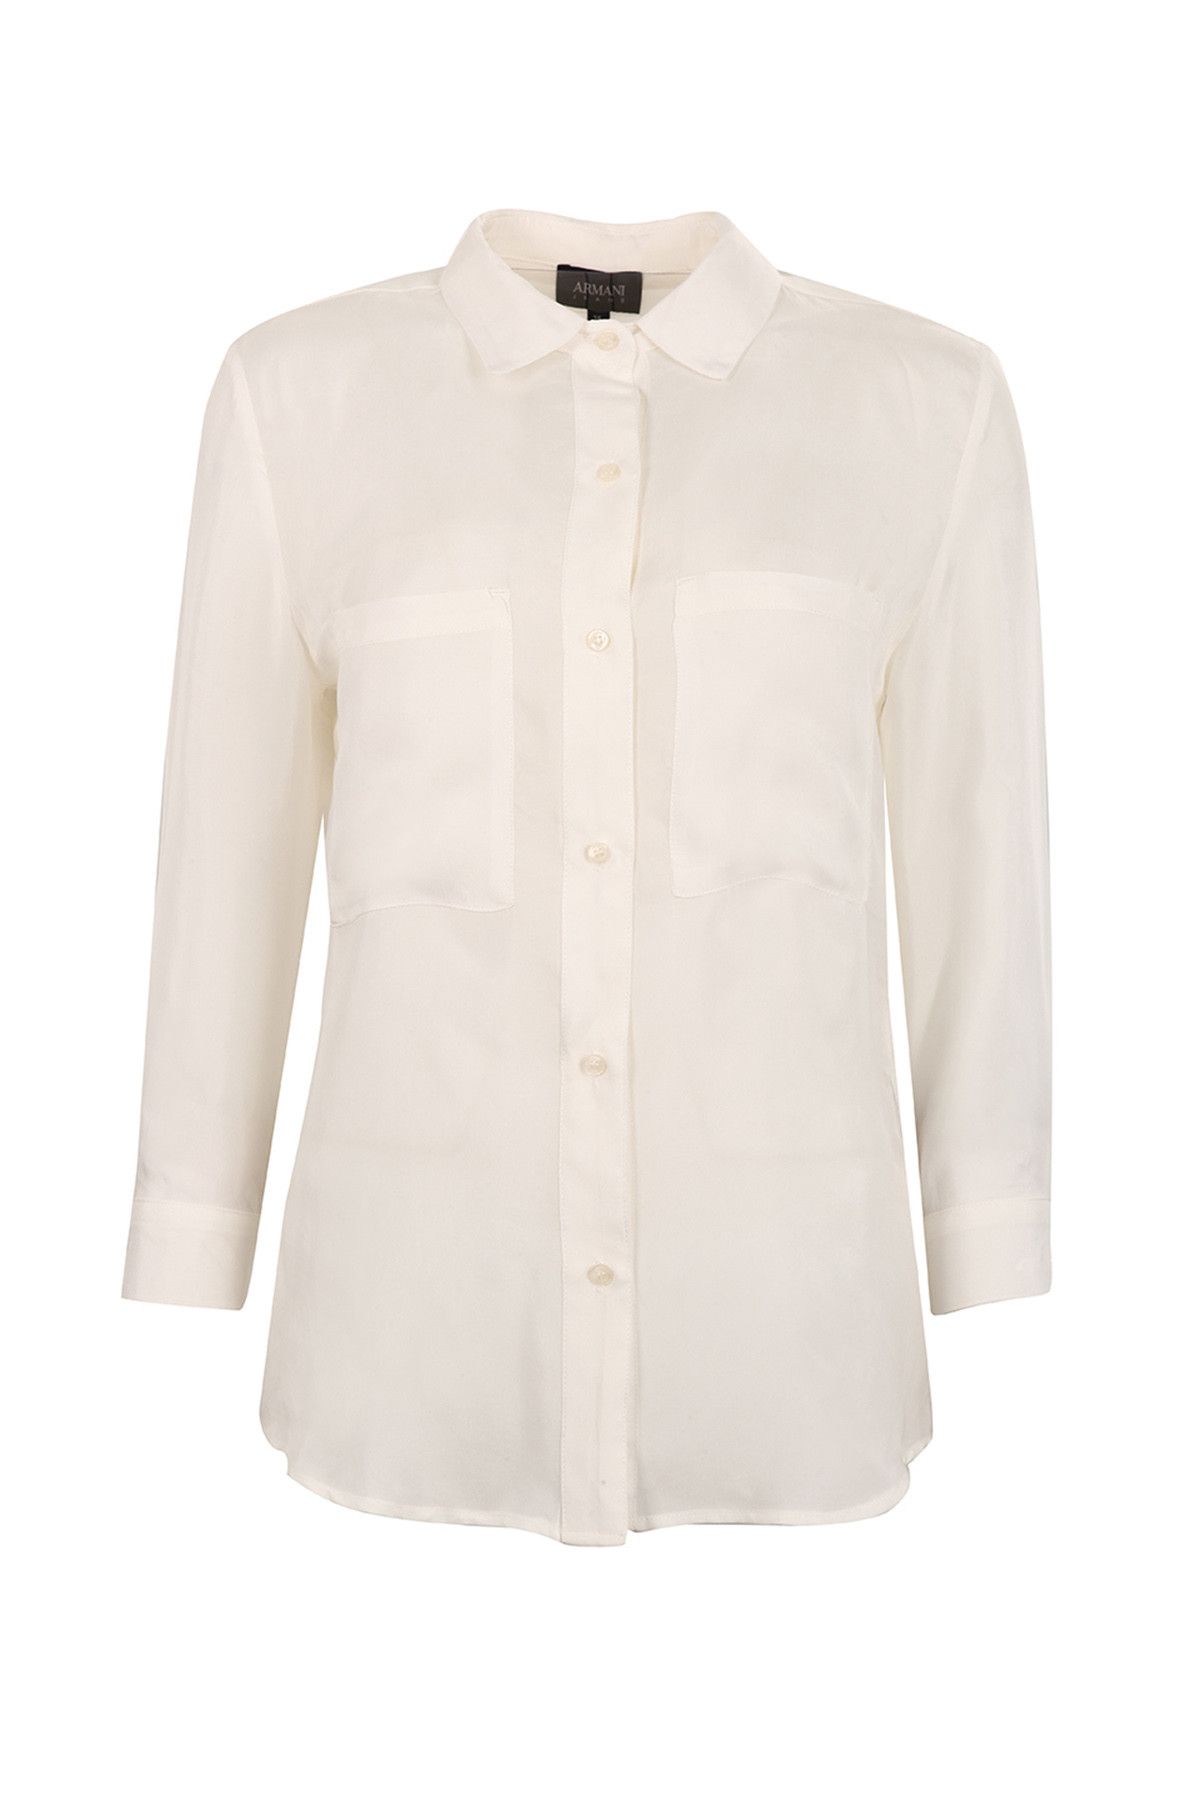 Armani Jeans Beyaz Kadın Gömlek 3Y5C045N1Ez